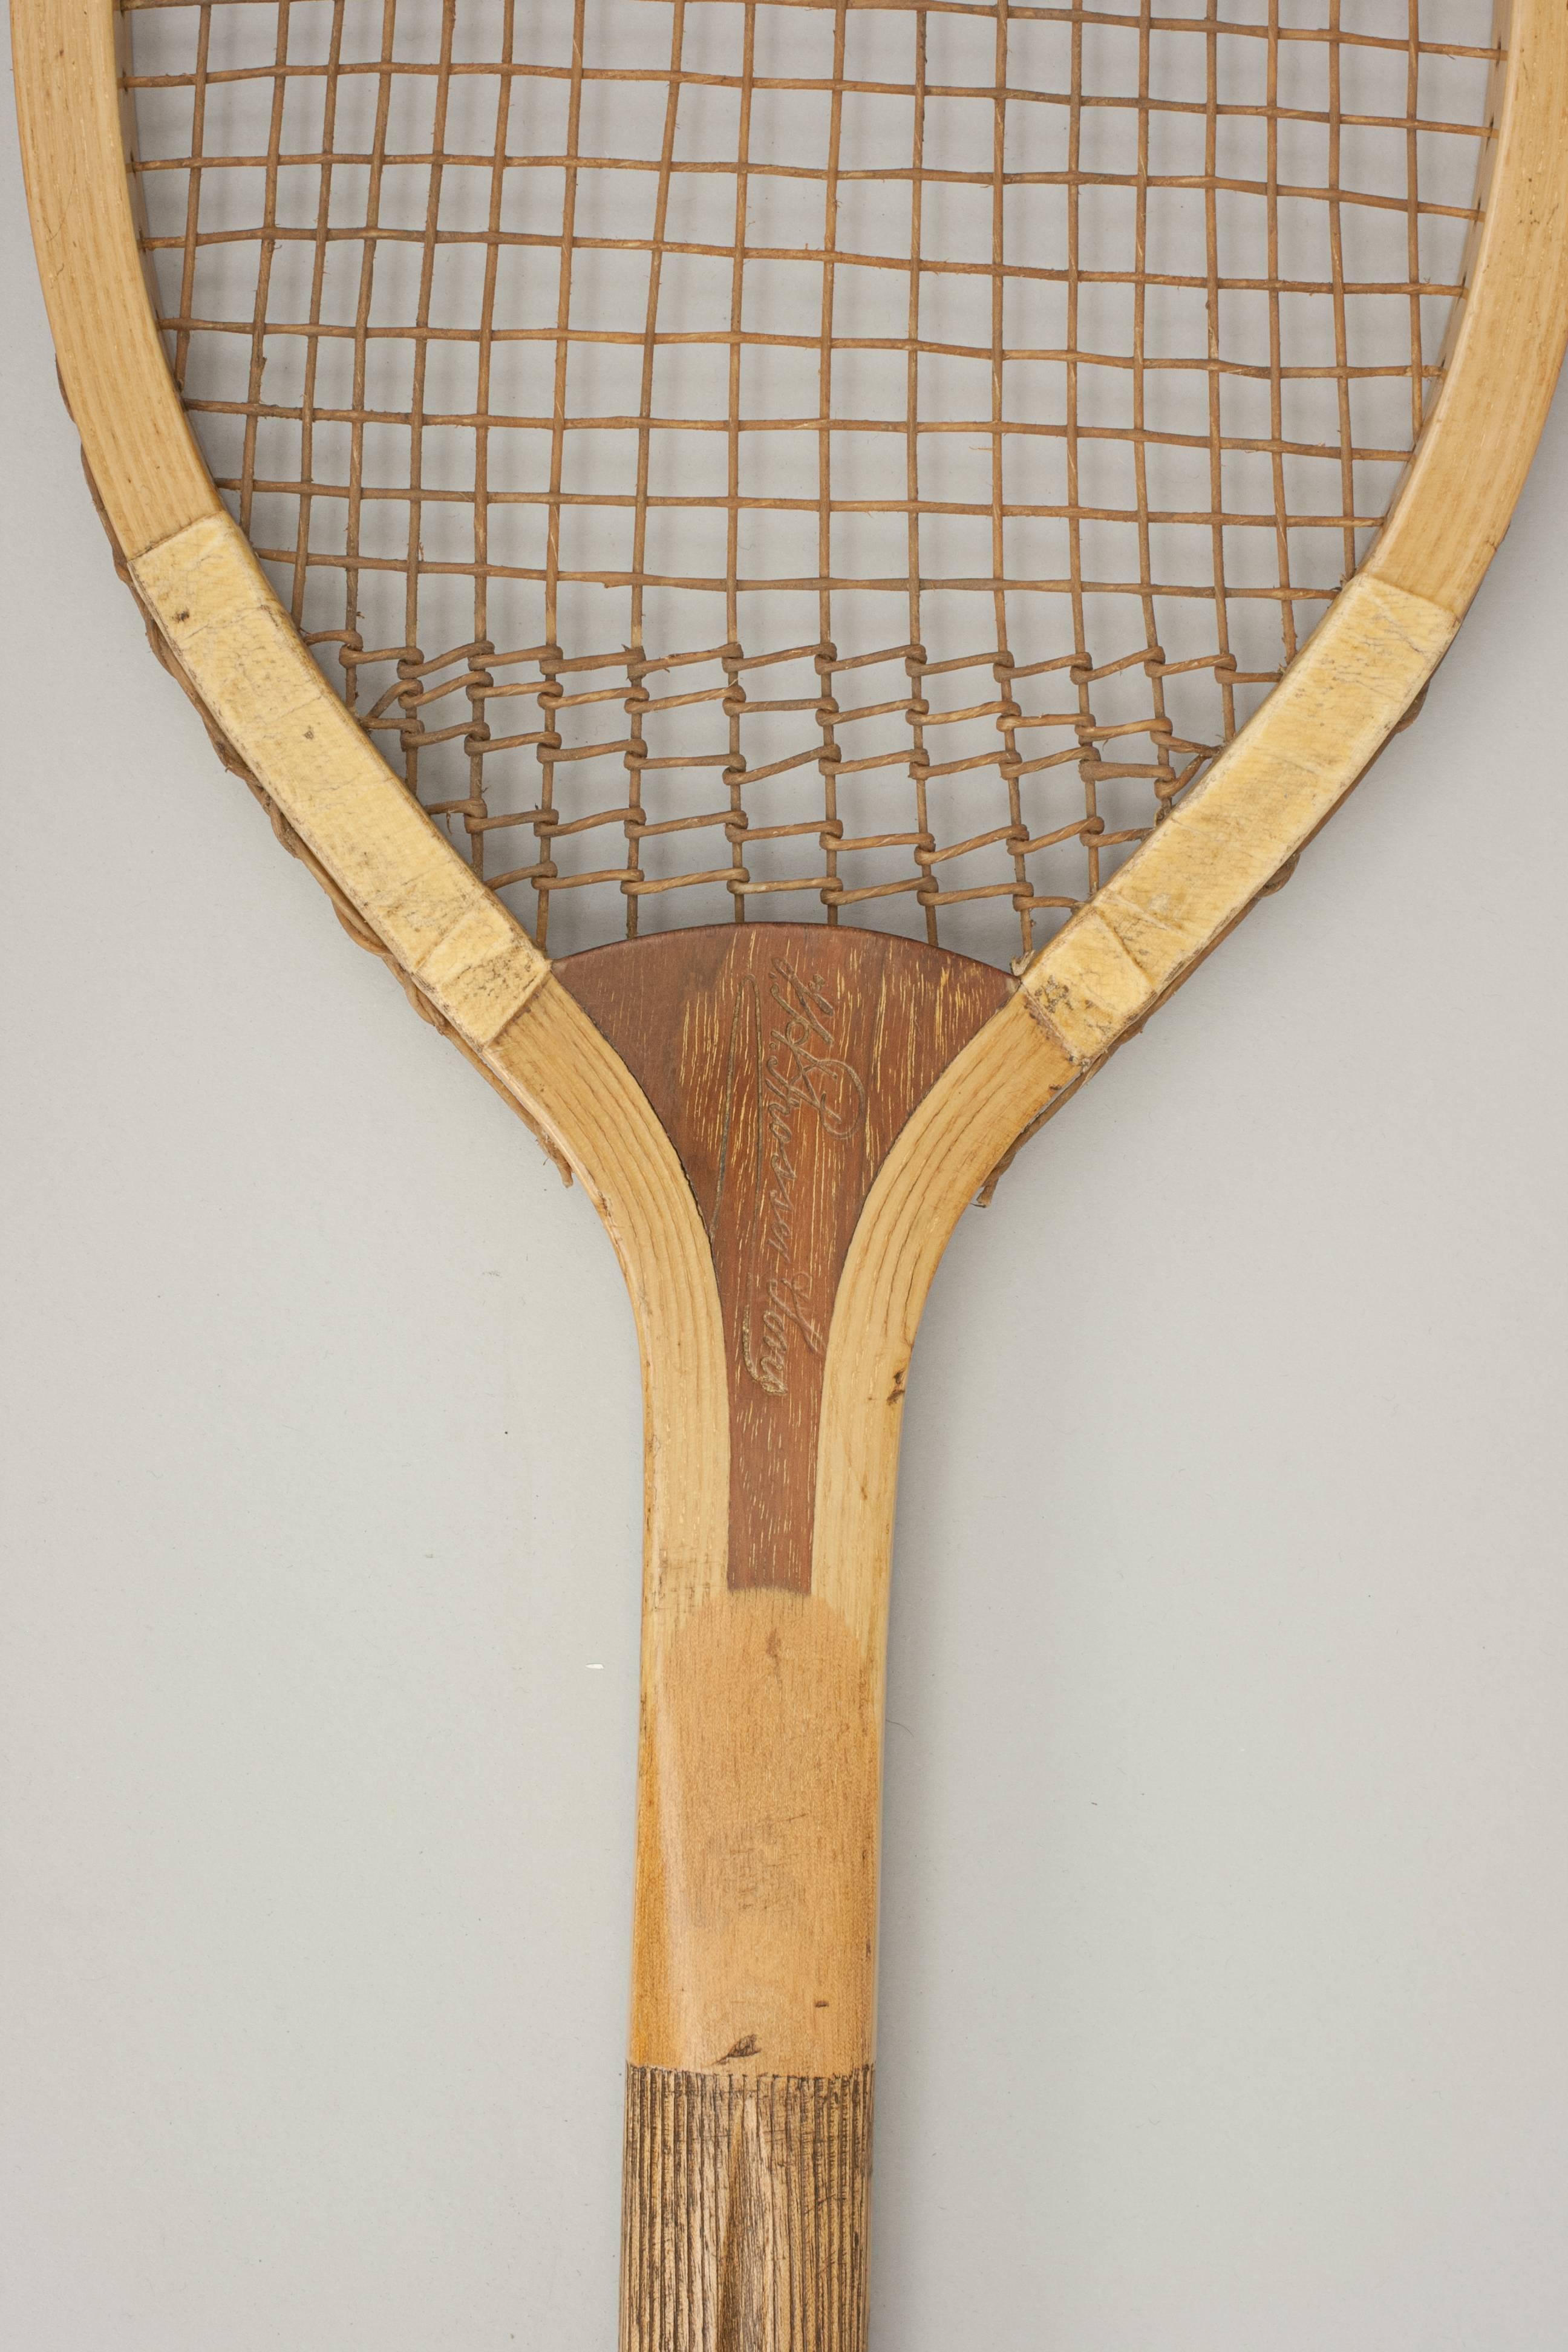 Prosser Fishtail Tennis Racket 2